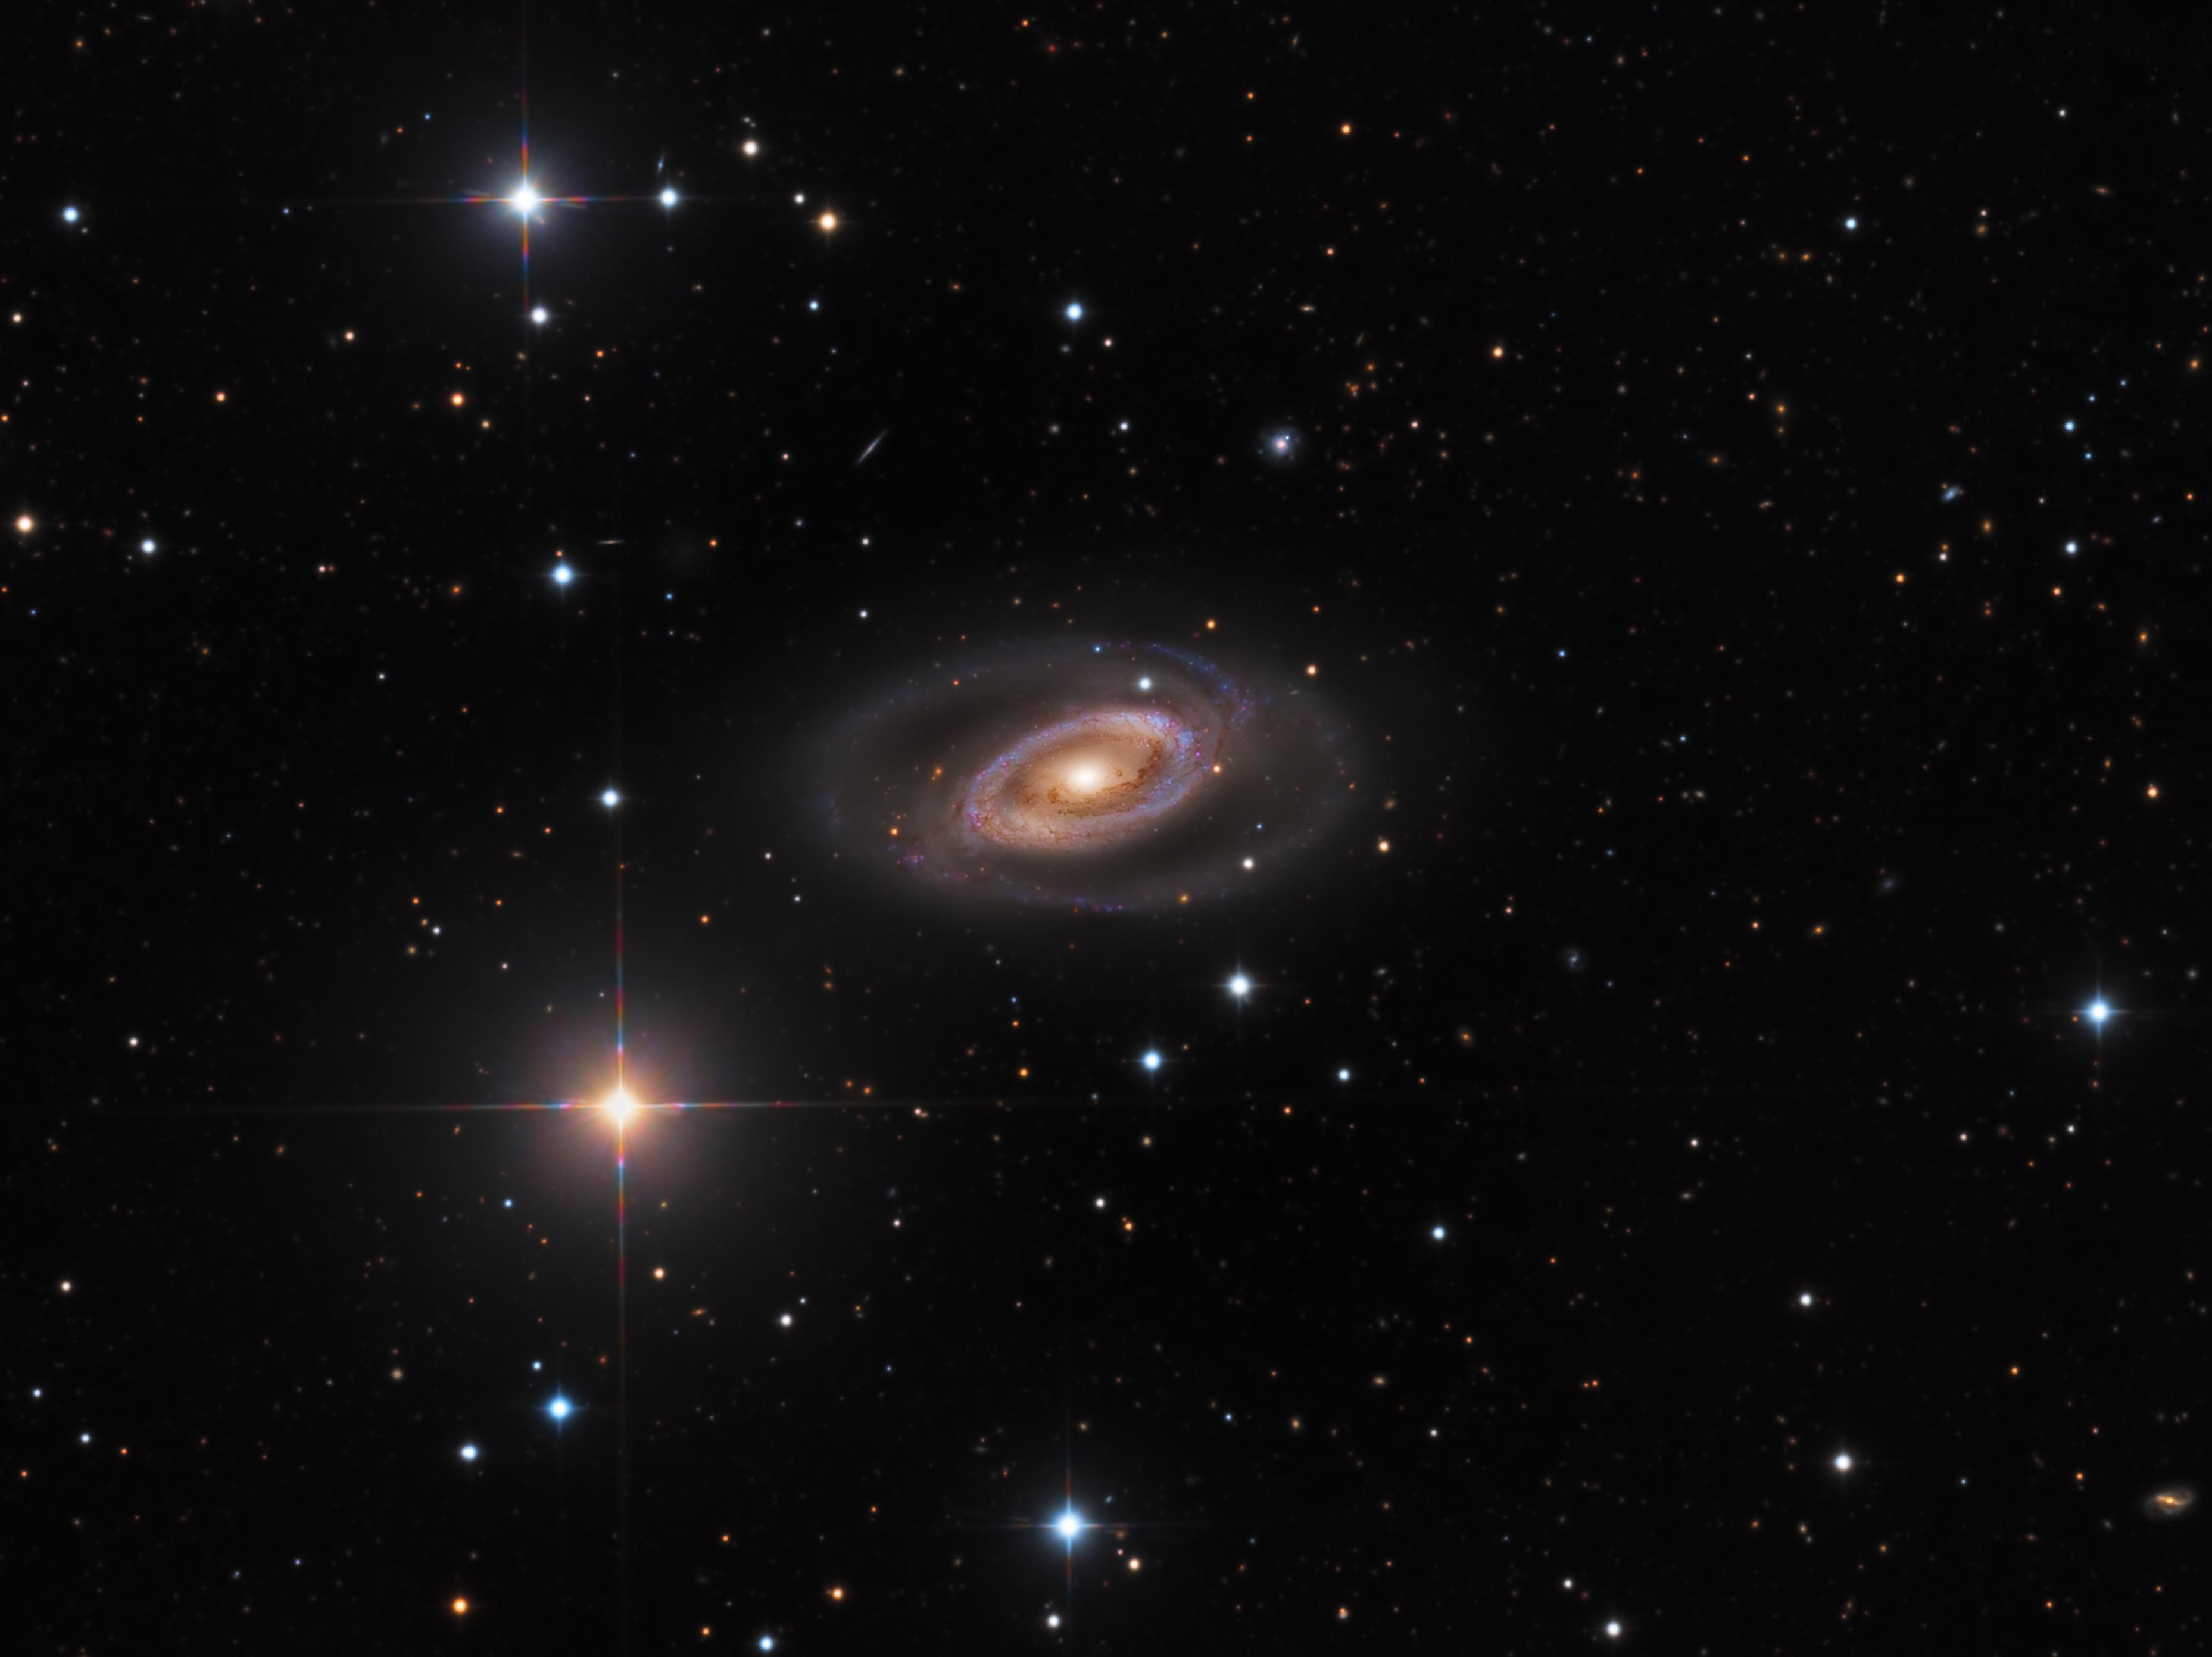 المجرة الحلزونية إن‌جي‌سي 1350 ذات الأذرع الملتفّة التي تسكنها عناقيد النجوم الزرقاء الفتيّة، والتي تشكّل دائرة تقريباً حول نواة المجرة الكبيرة والساطعة. تحيط بالمجرّة نجومٌ ساطعة مالئةً إطار الصورة.